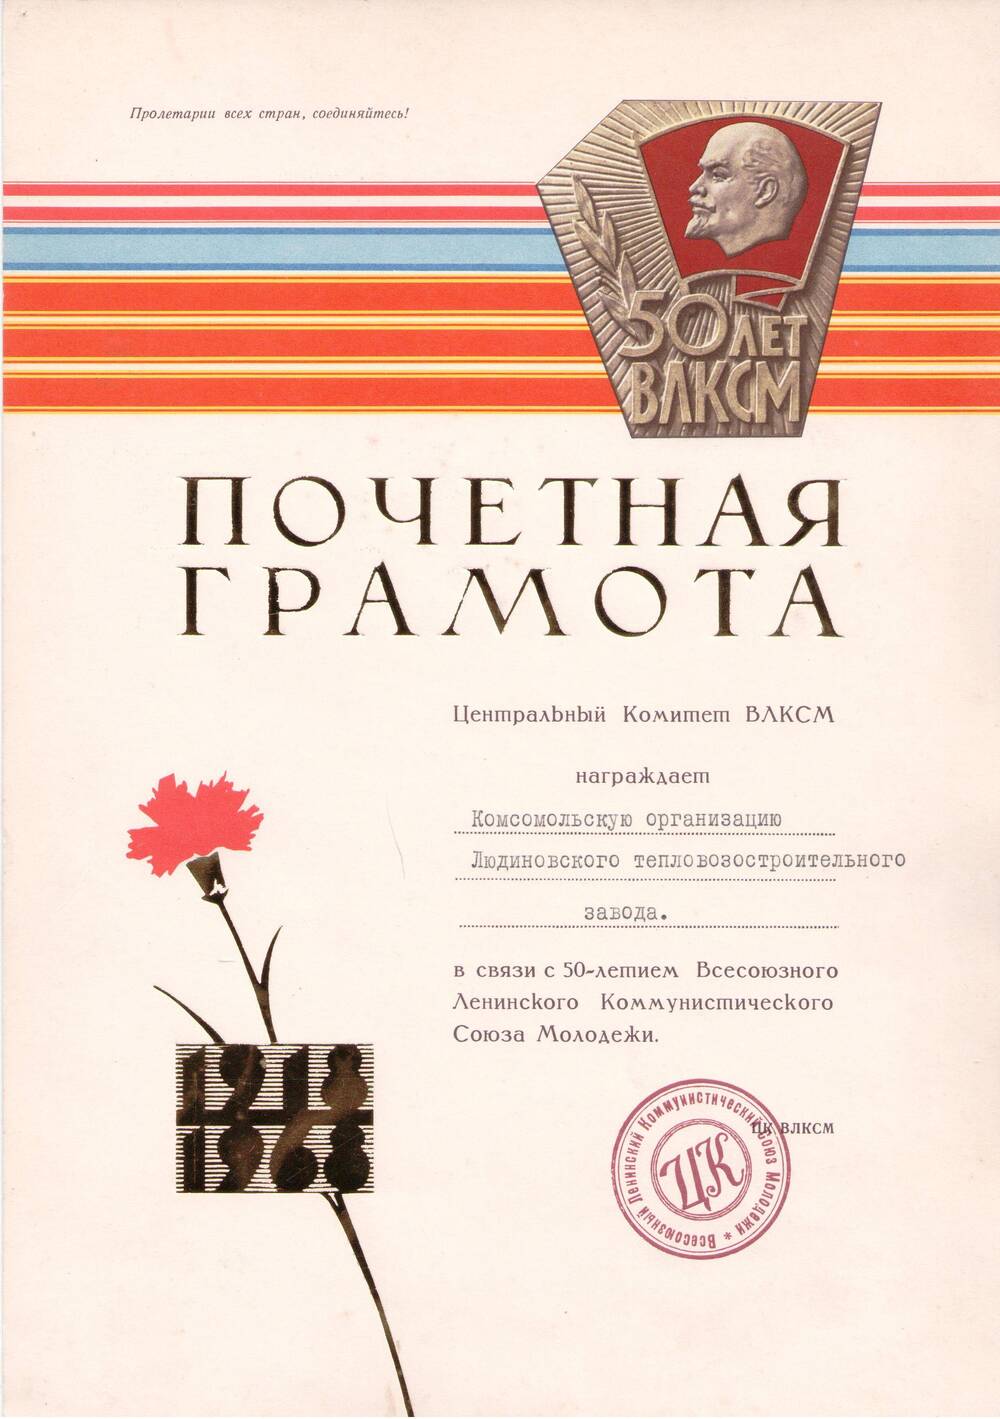 Почетная грамота ЦК ВЛКСМ комсомольской организации ЛТЗ в связи с 50-летием Всесоюзного Ленинского Коммунистического Союза Молодежи.